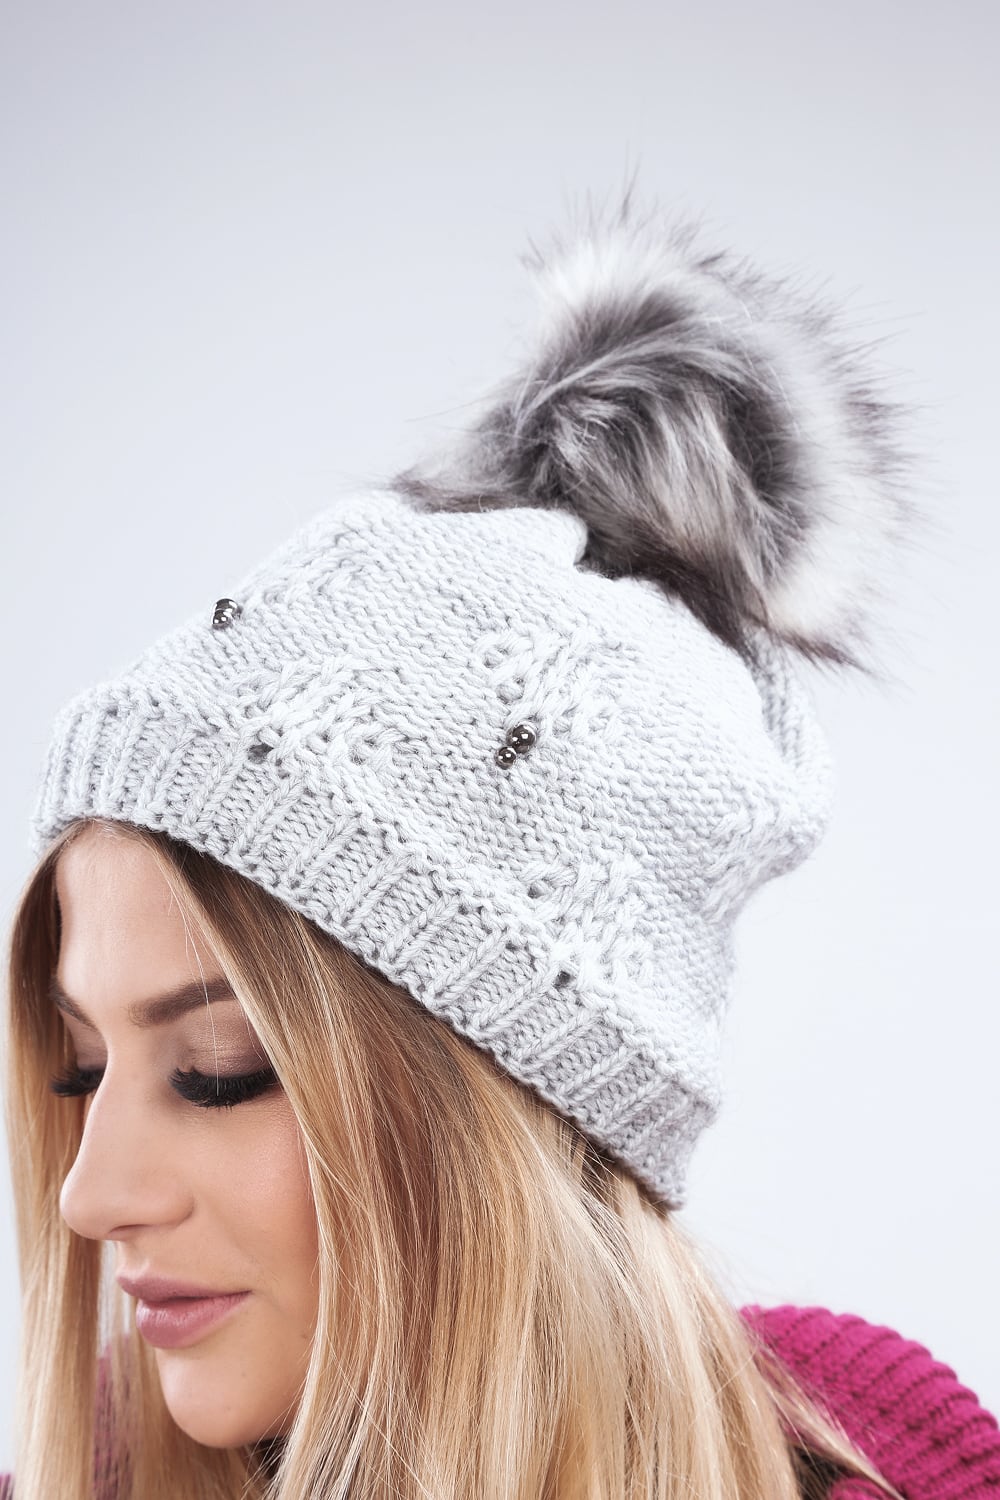 Light gray winter cap